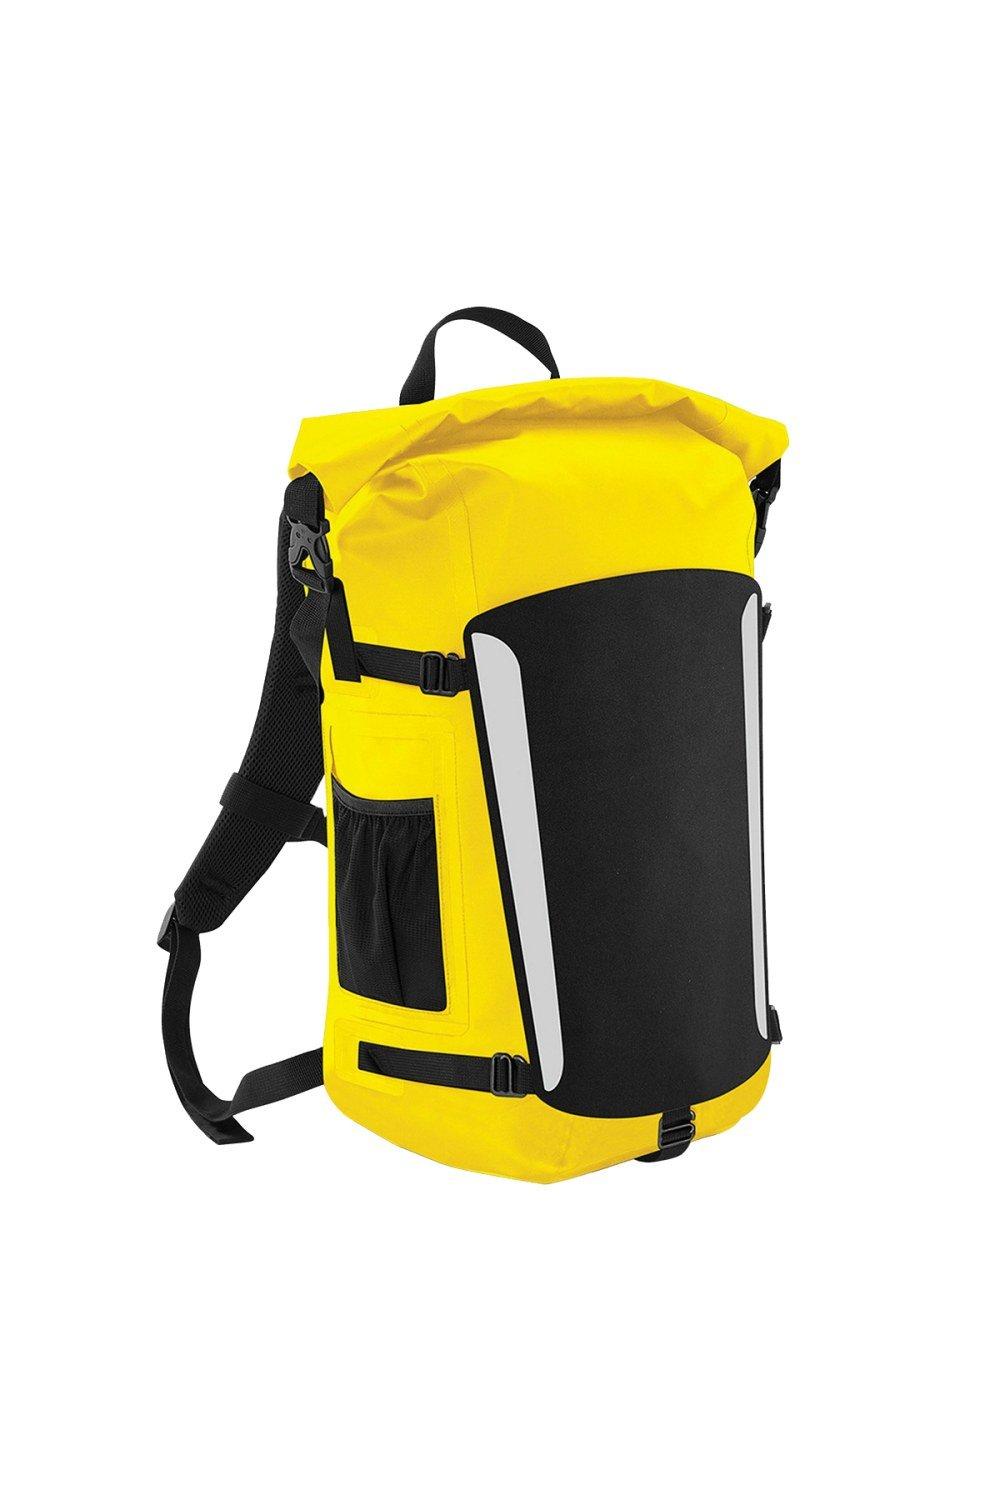 Submerge 25 Litre Waterproof Backpack Rucksack Pack of 2